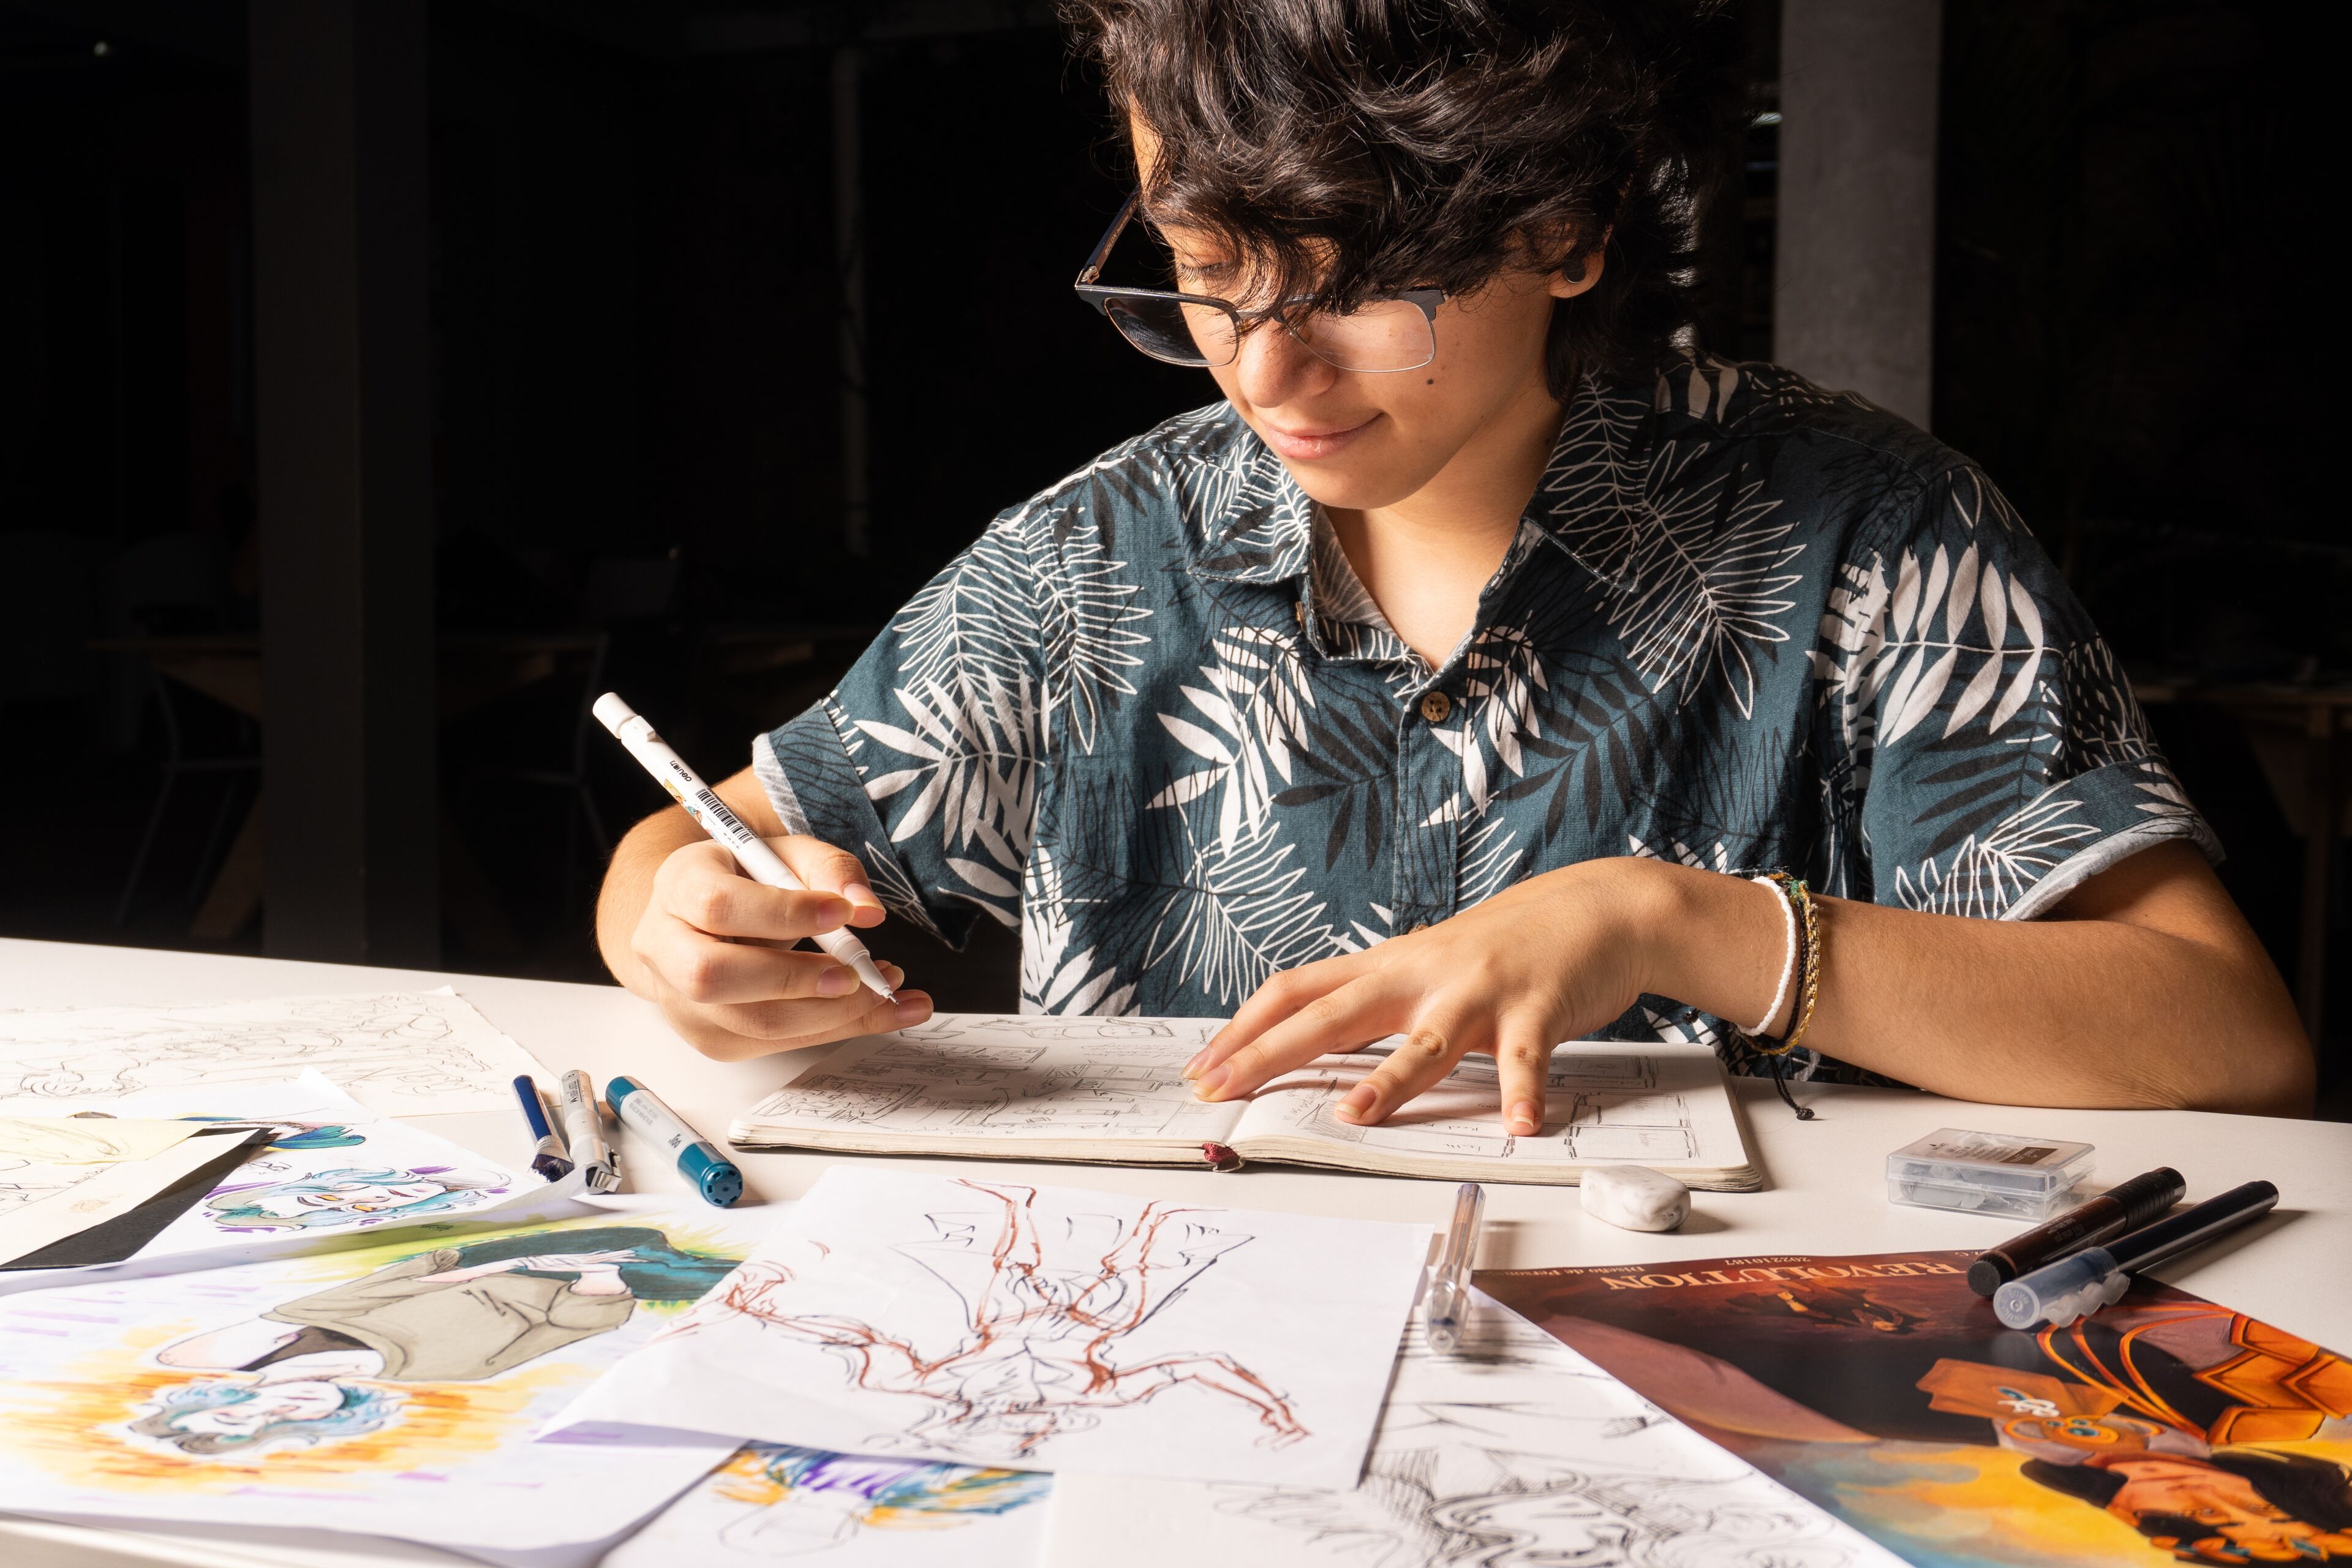 Una persona enfocada boceta ilustraciones de personajes, rodeada de materiales de arte y dibujos.